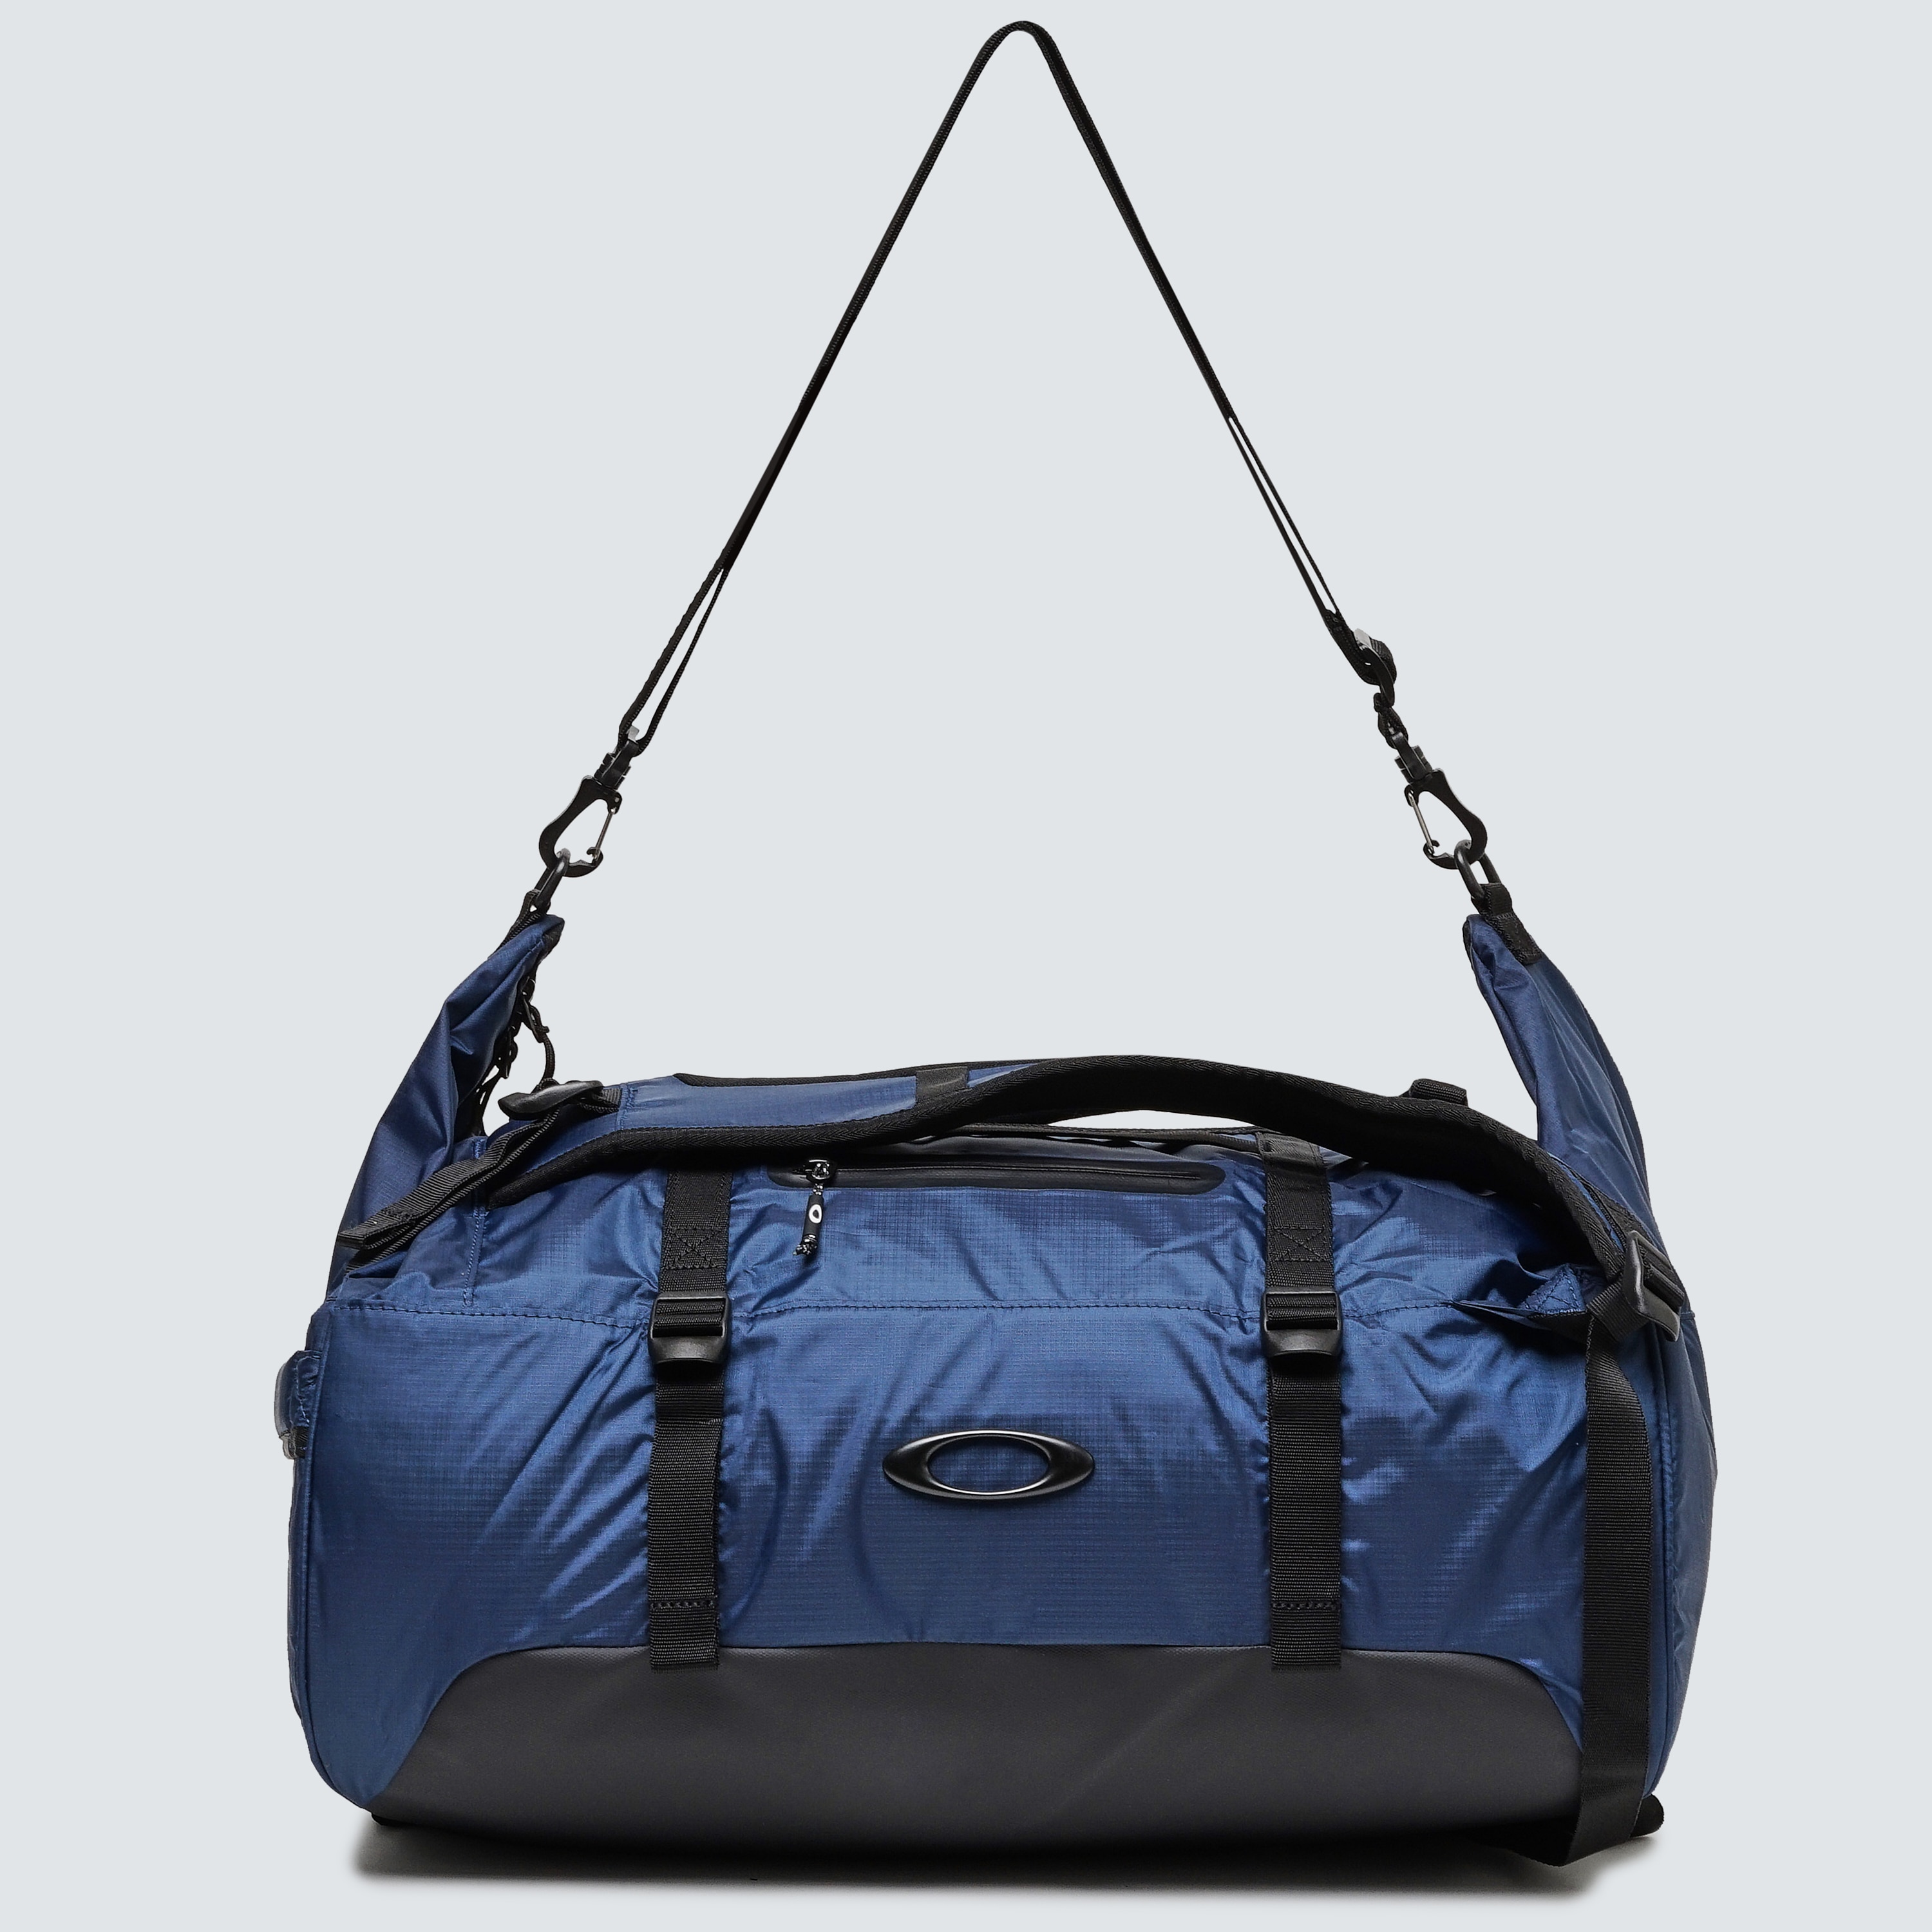 oakley duffel backpack